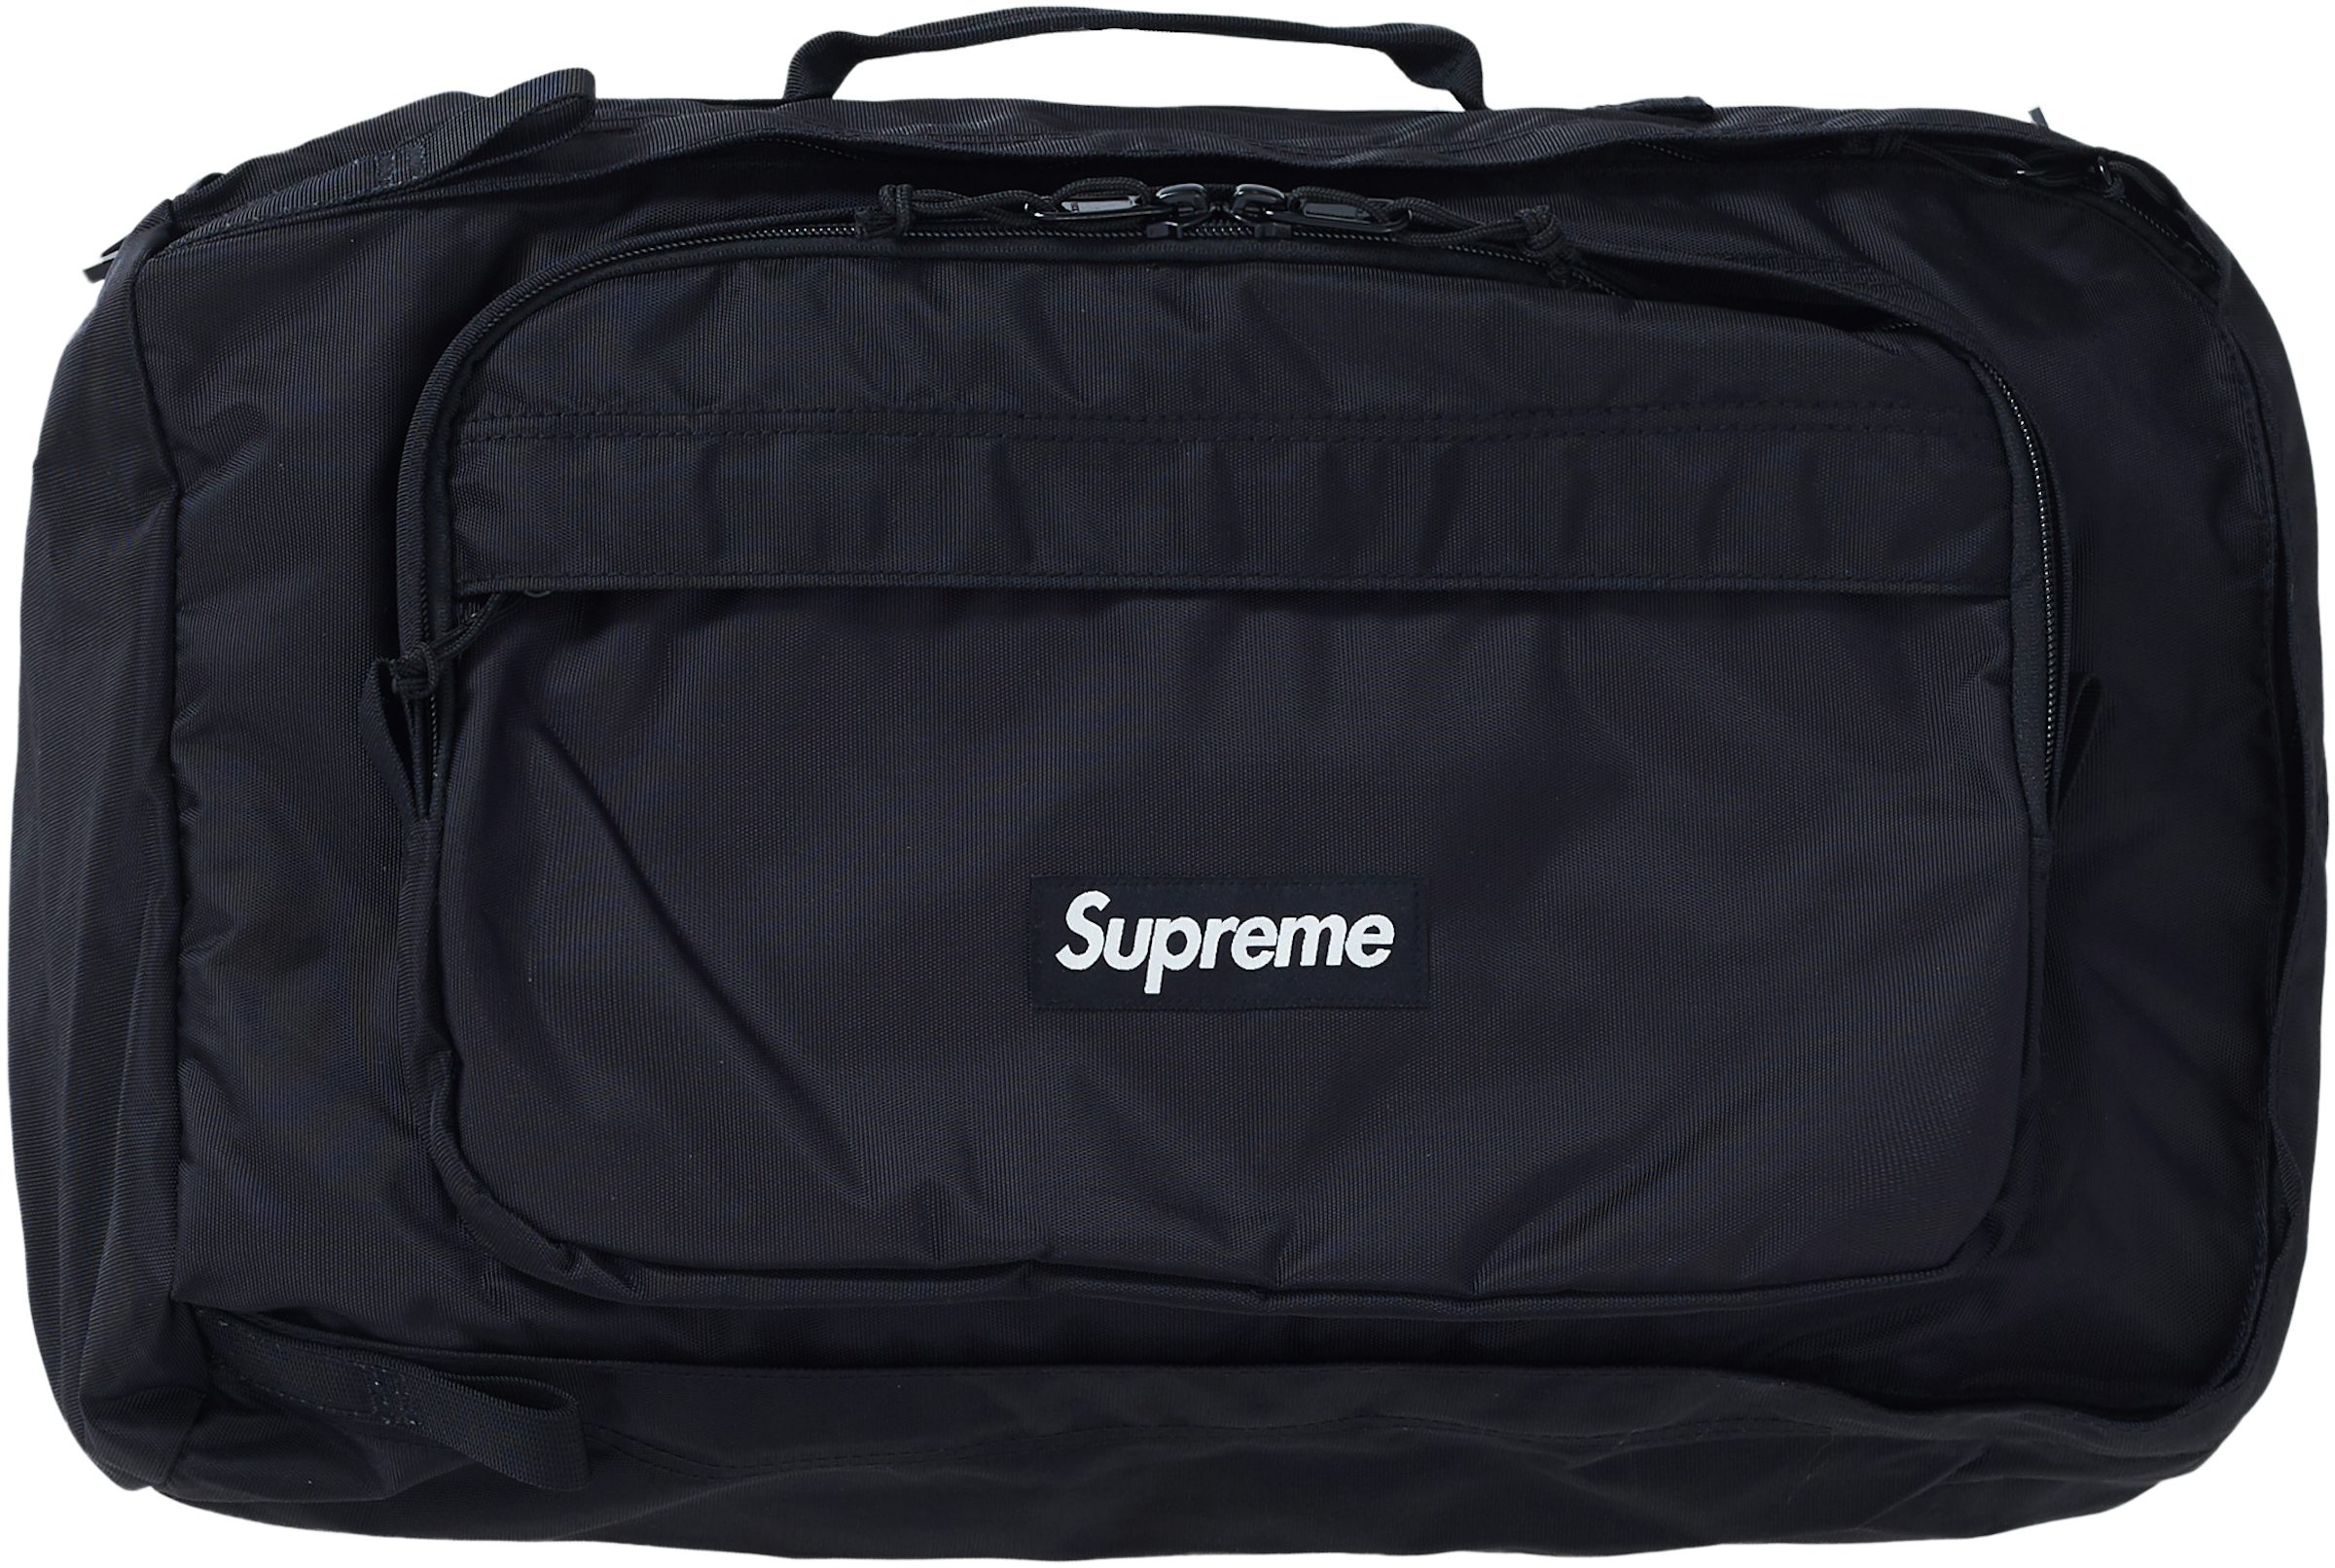 Supreme Duffle Bag (FW19) Black - FW19 - US